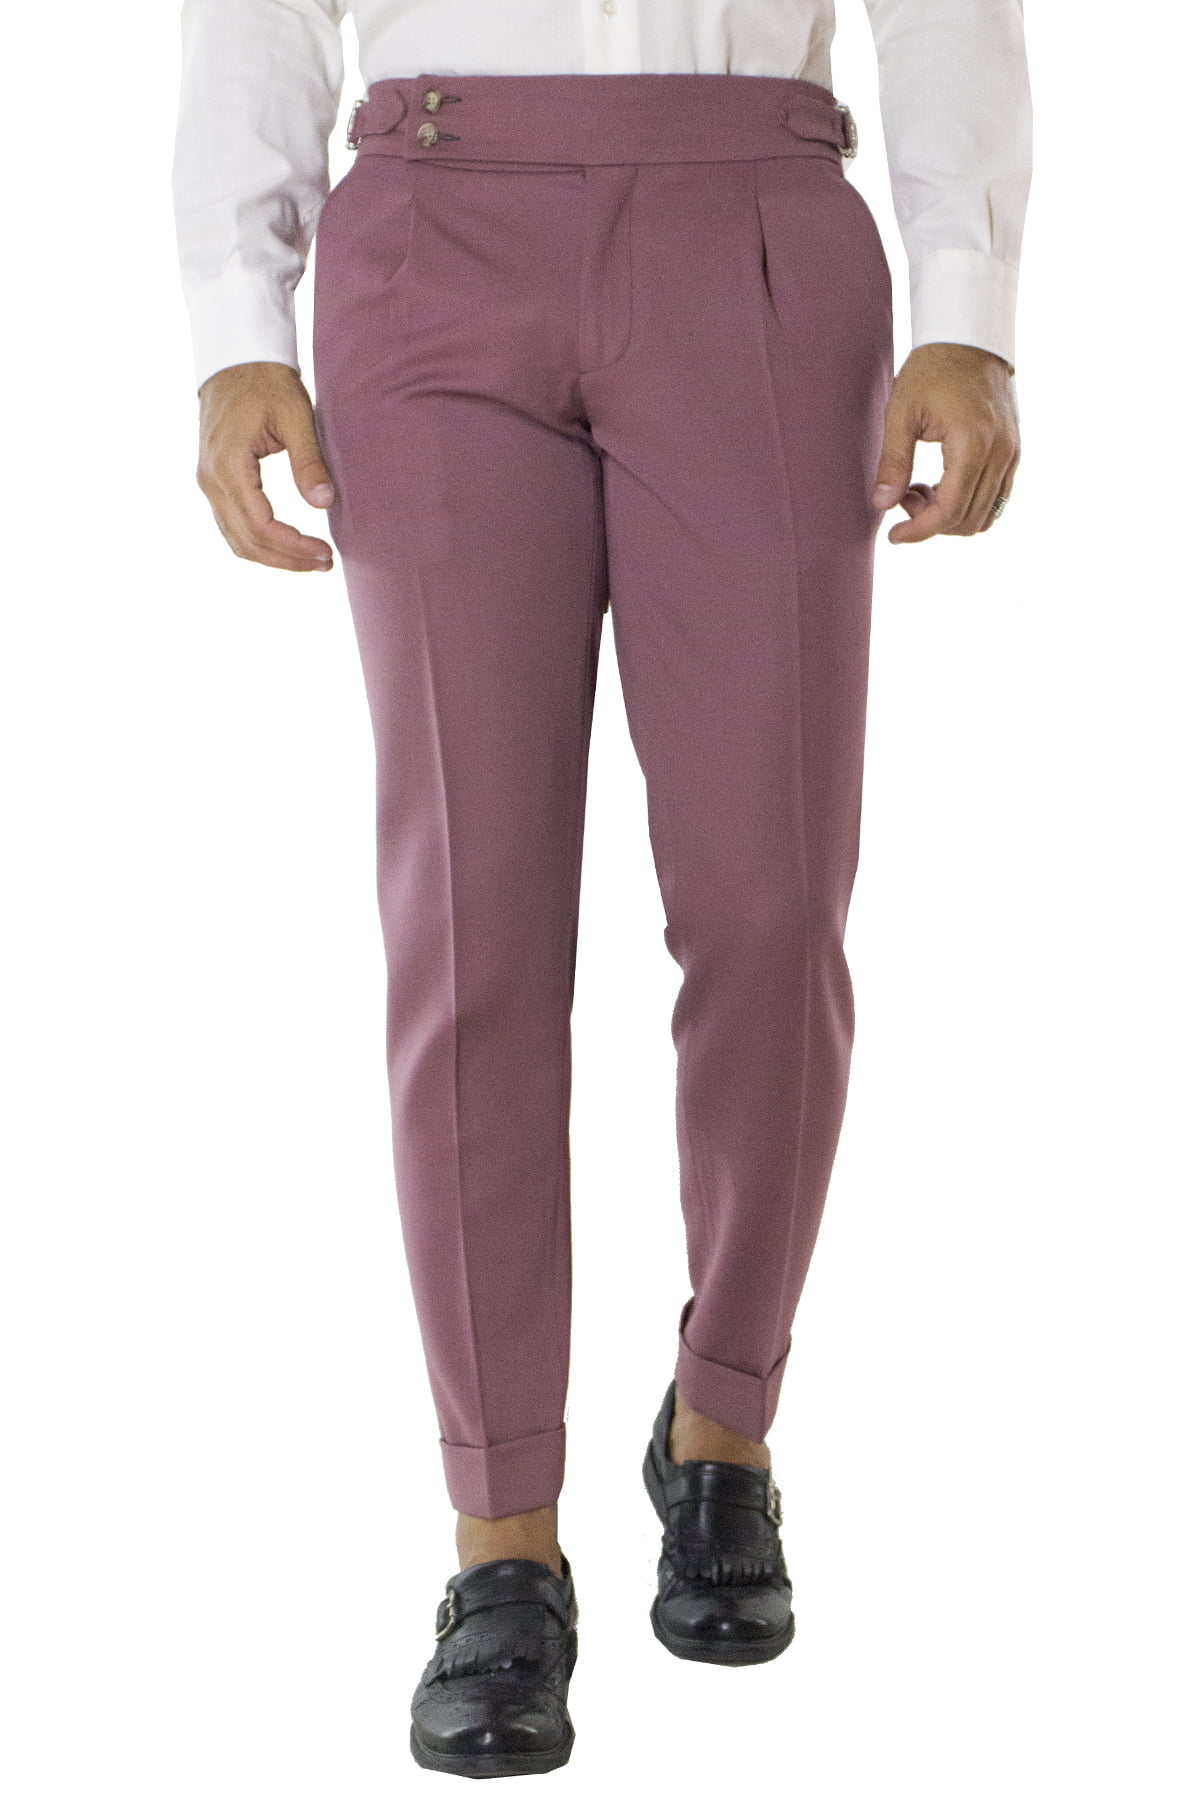 Pantalone uomo cipolla in lana tinta unita vita alta con pinces fibbie laterali e risvolto 4cm